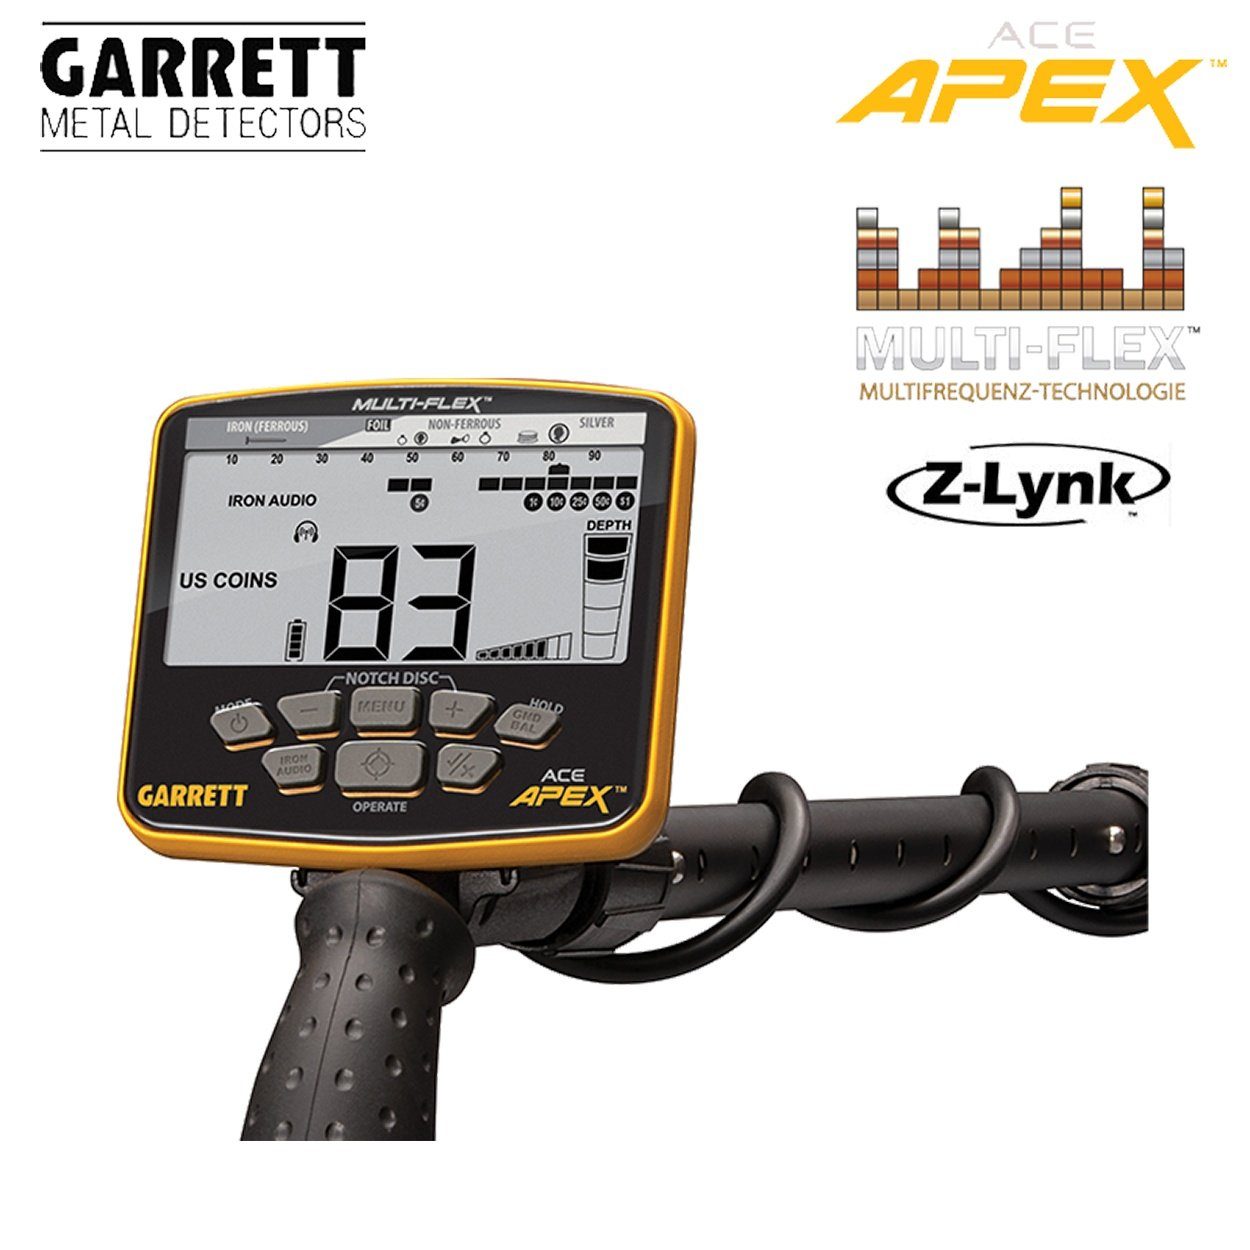 Metalldetektor APEX Garrett Ace Metalldetektor (Wireless Raider Pack) Garrett